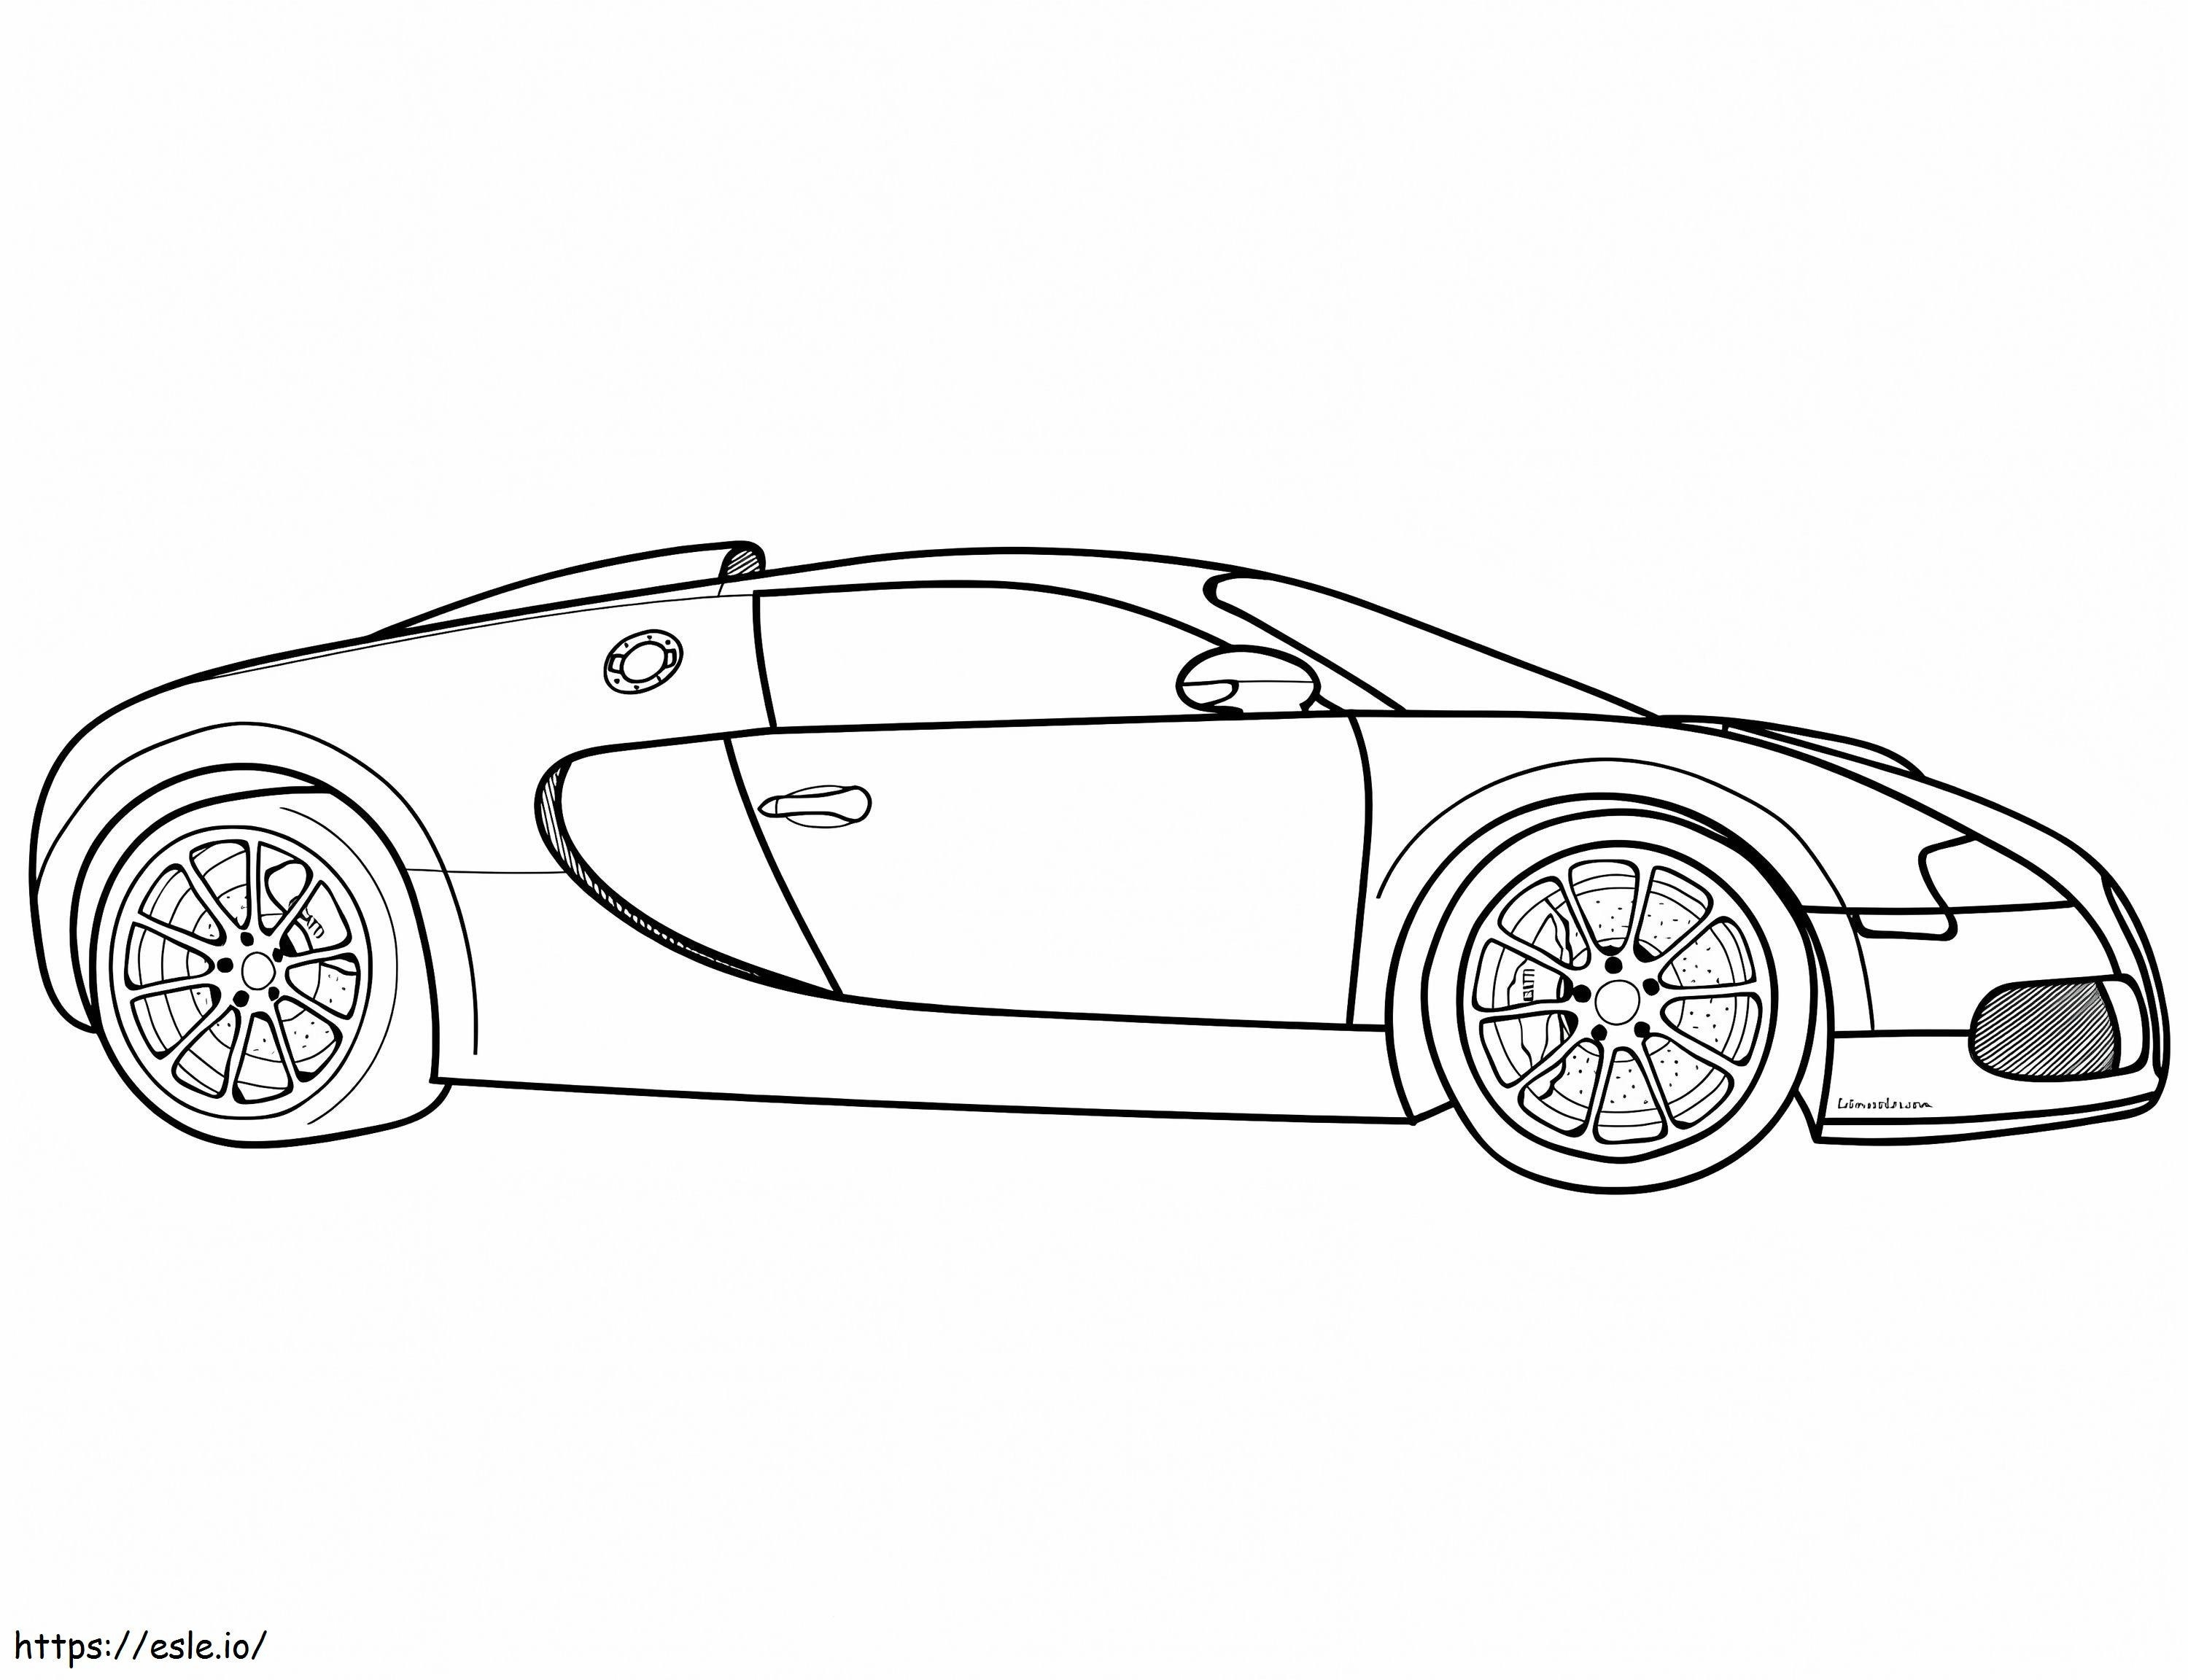 Samochód Bugatti 1 kolorowanka